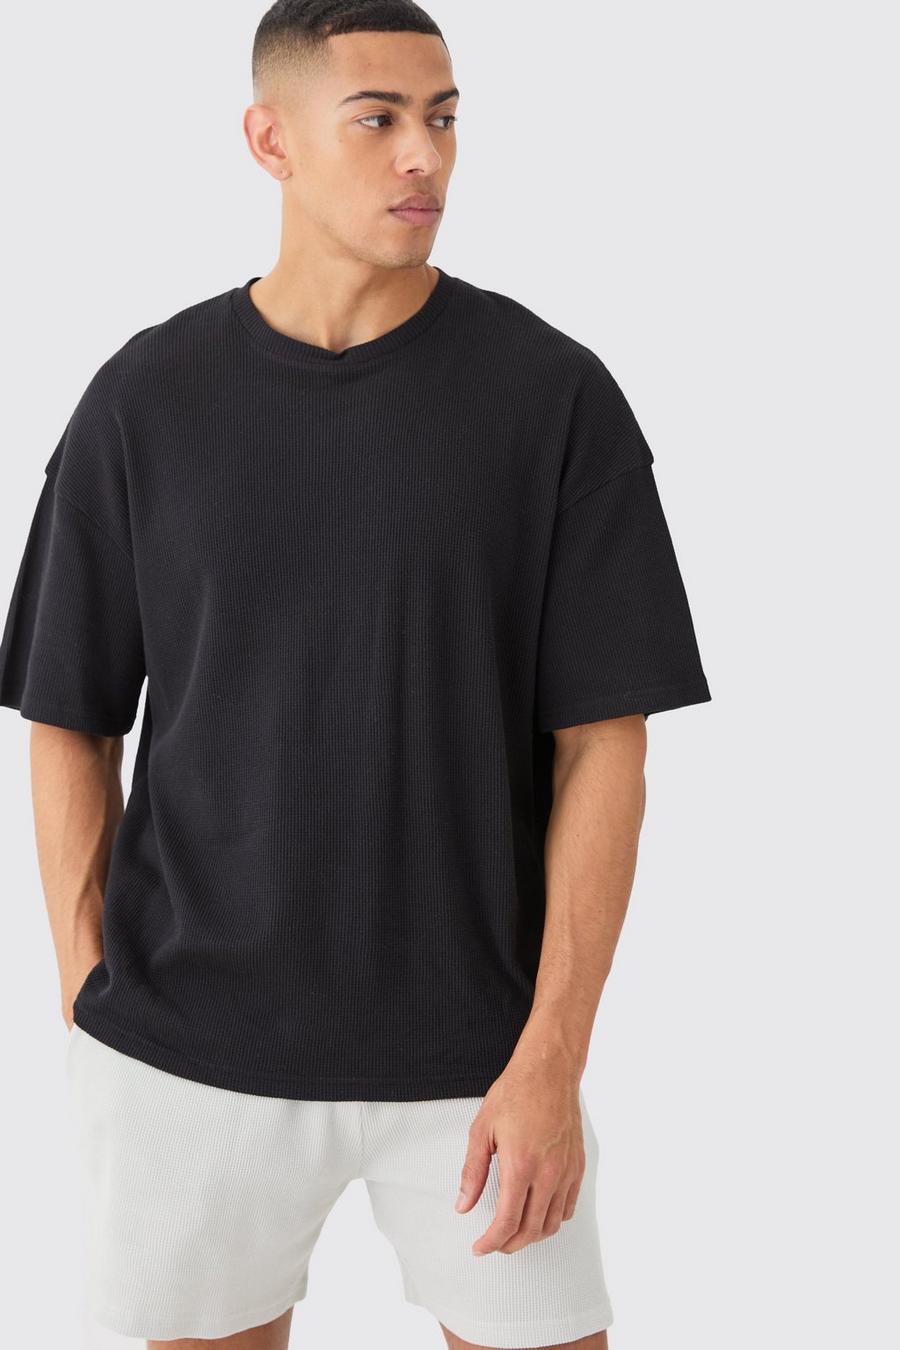 Camiseta oversize de tela gofre, Black